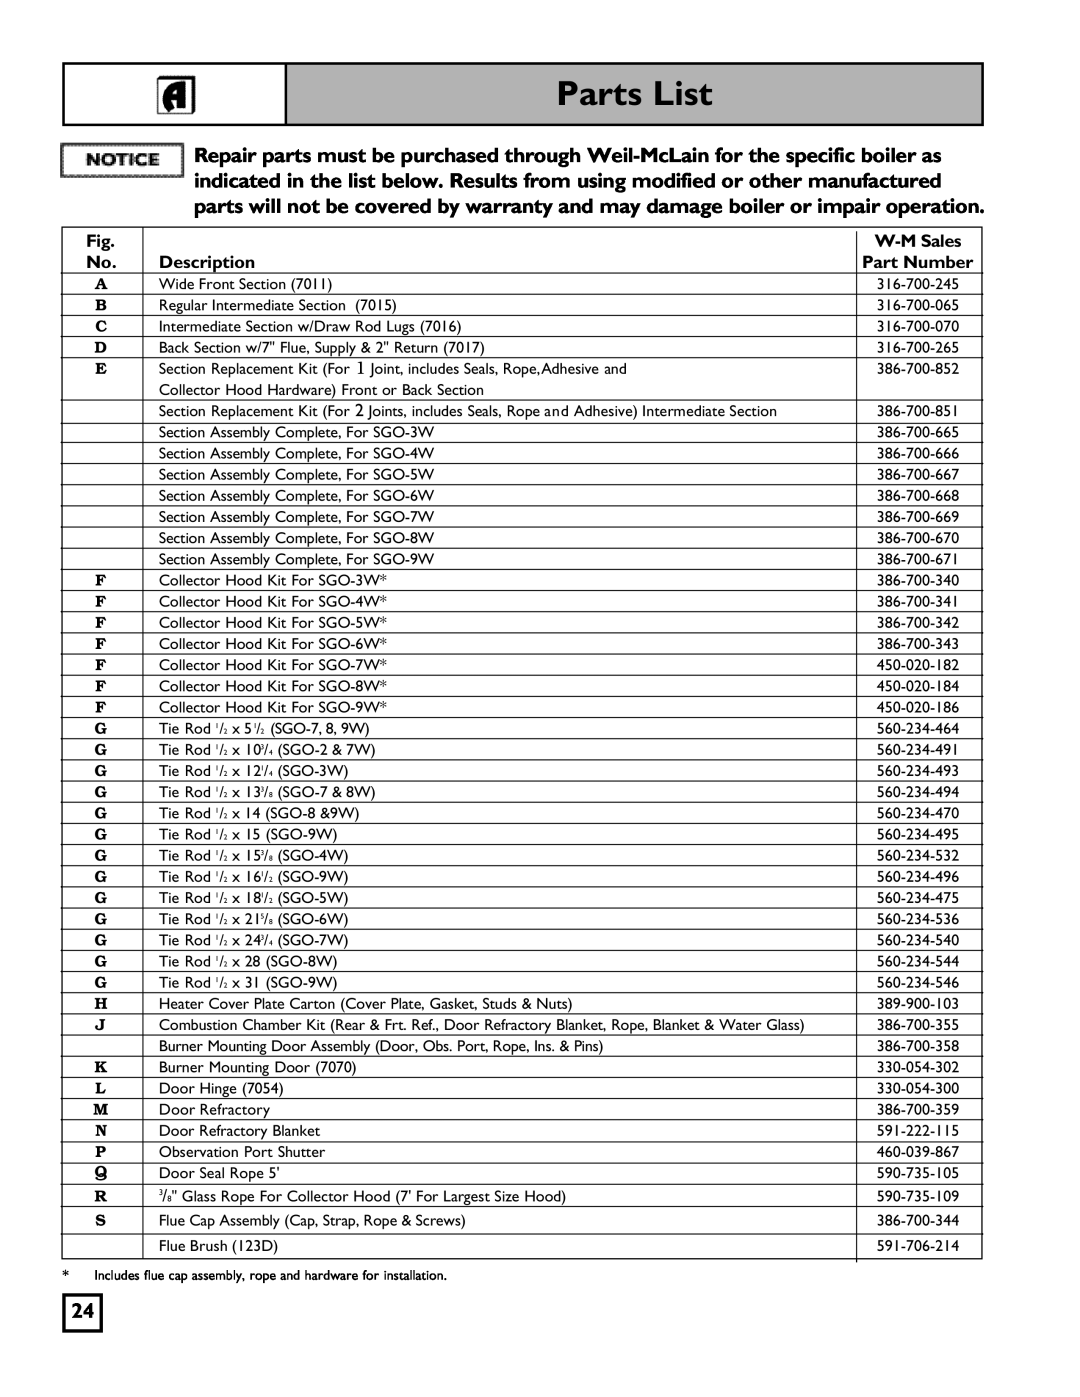 Weil-McLain 550-141-827/1201 manual Parts List, W-M Sales, Description, Part Number 